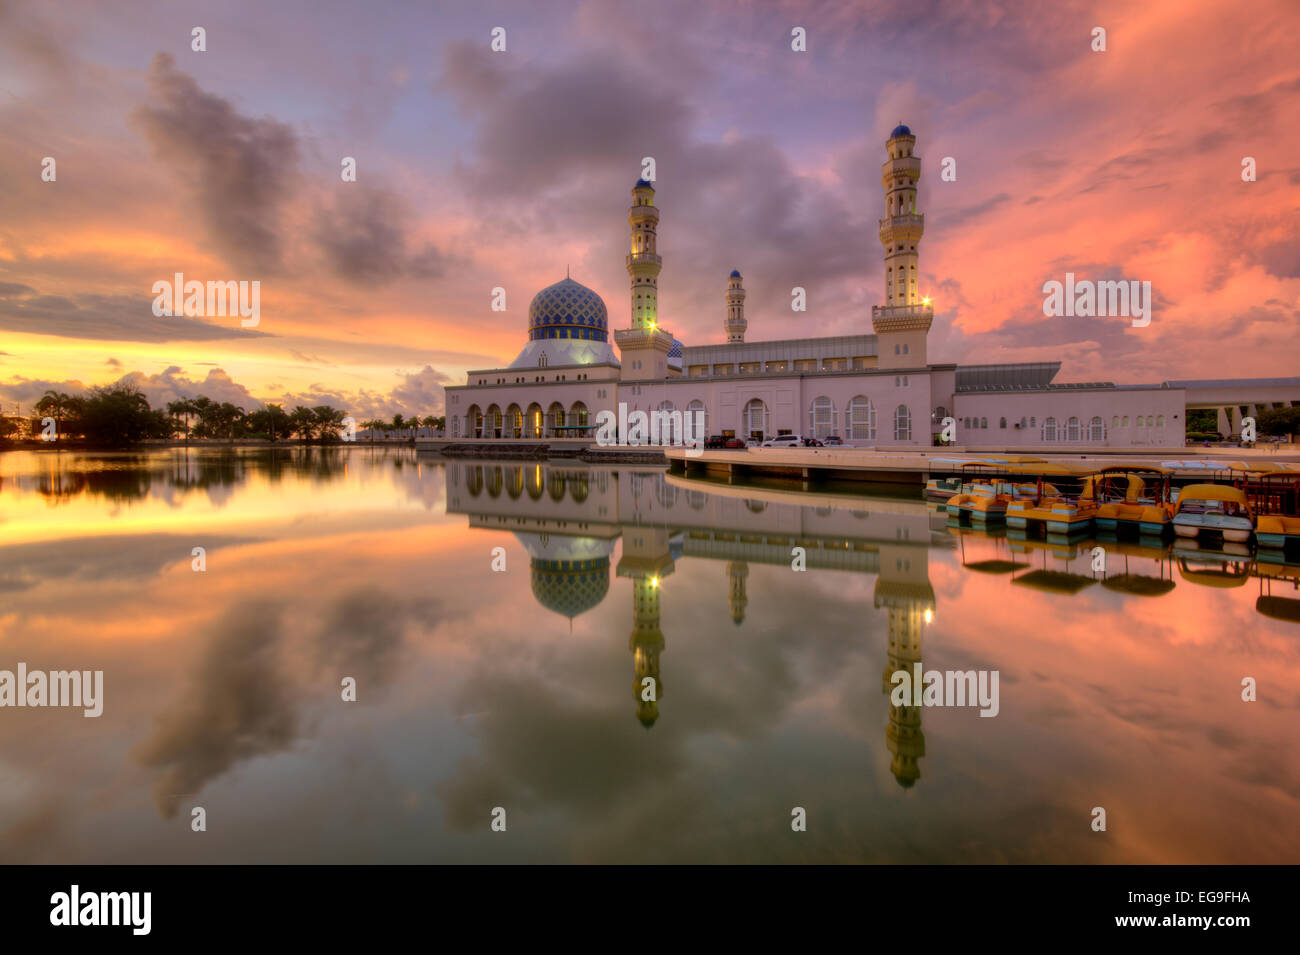 Malaysia, Sabah, Kota Kinabalu City Mosque, View of mosque during sunset Stock Photo